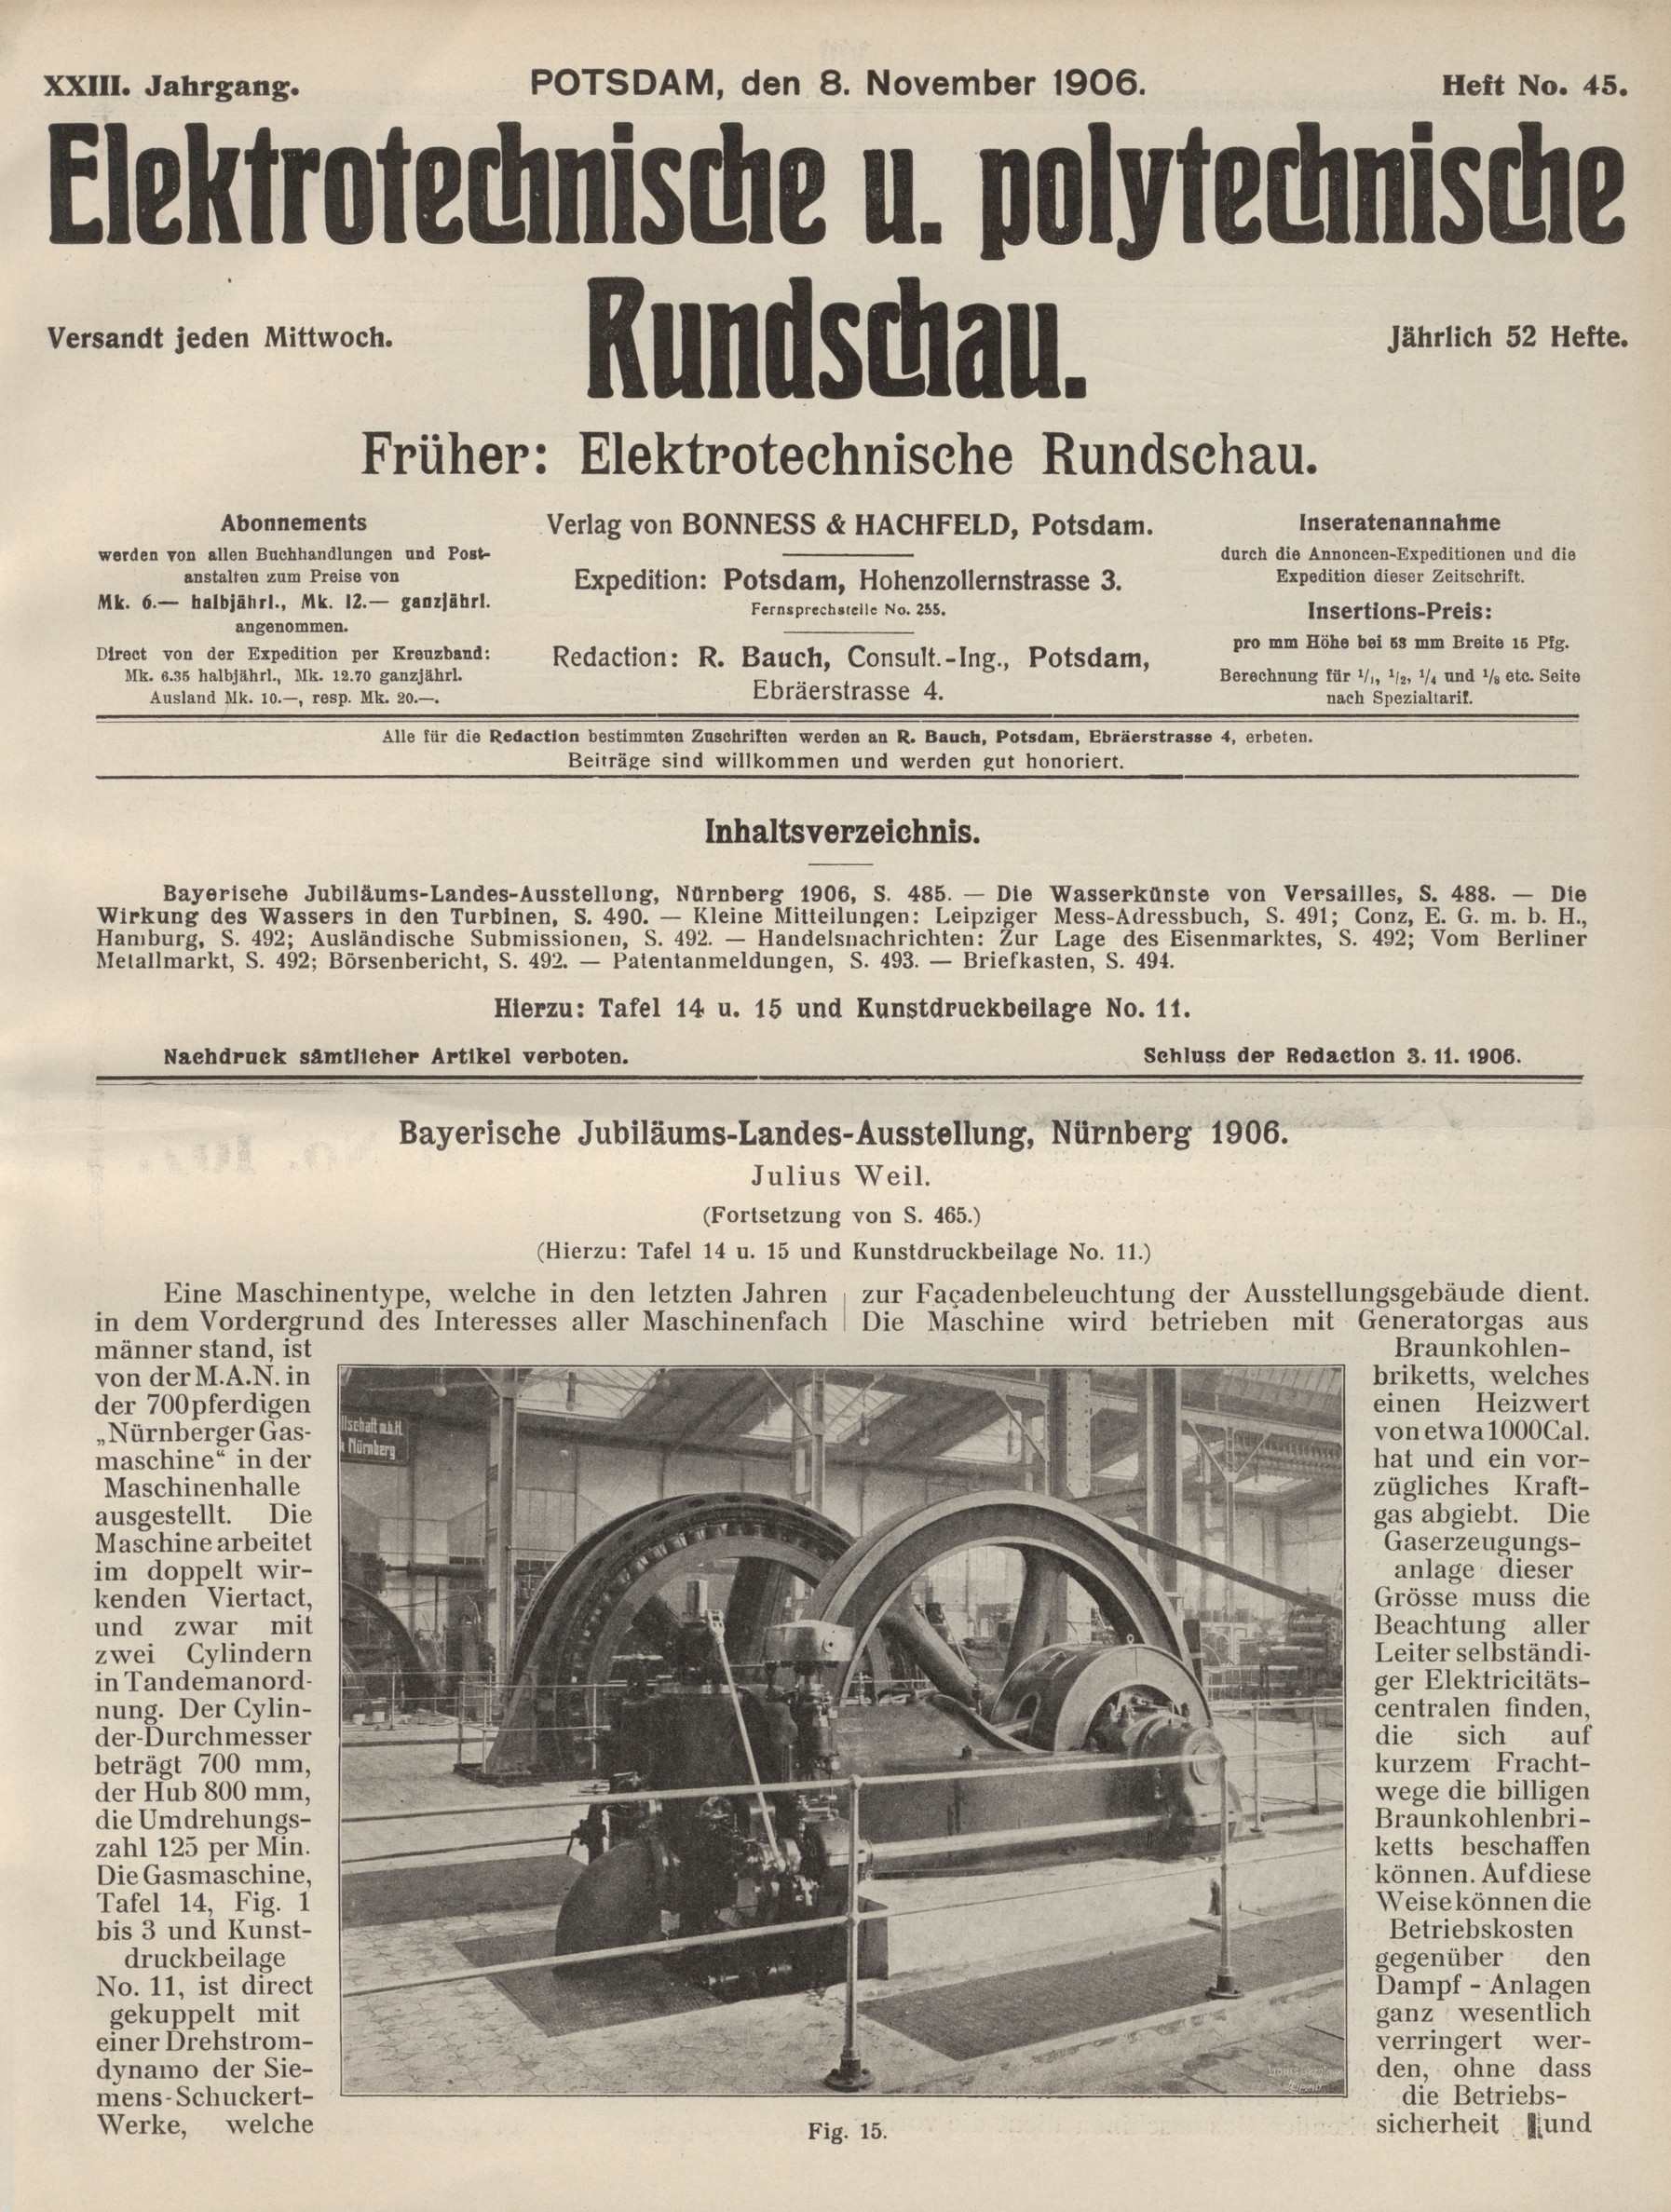 Elektrotechnische und polytechnische Rundschau, XXIII. Jahrgang, Heft No. 45